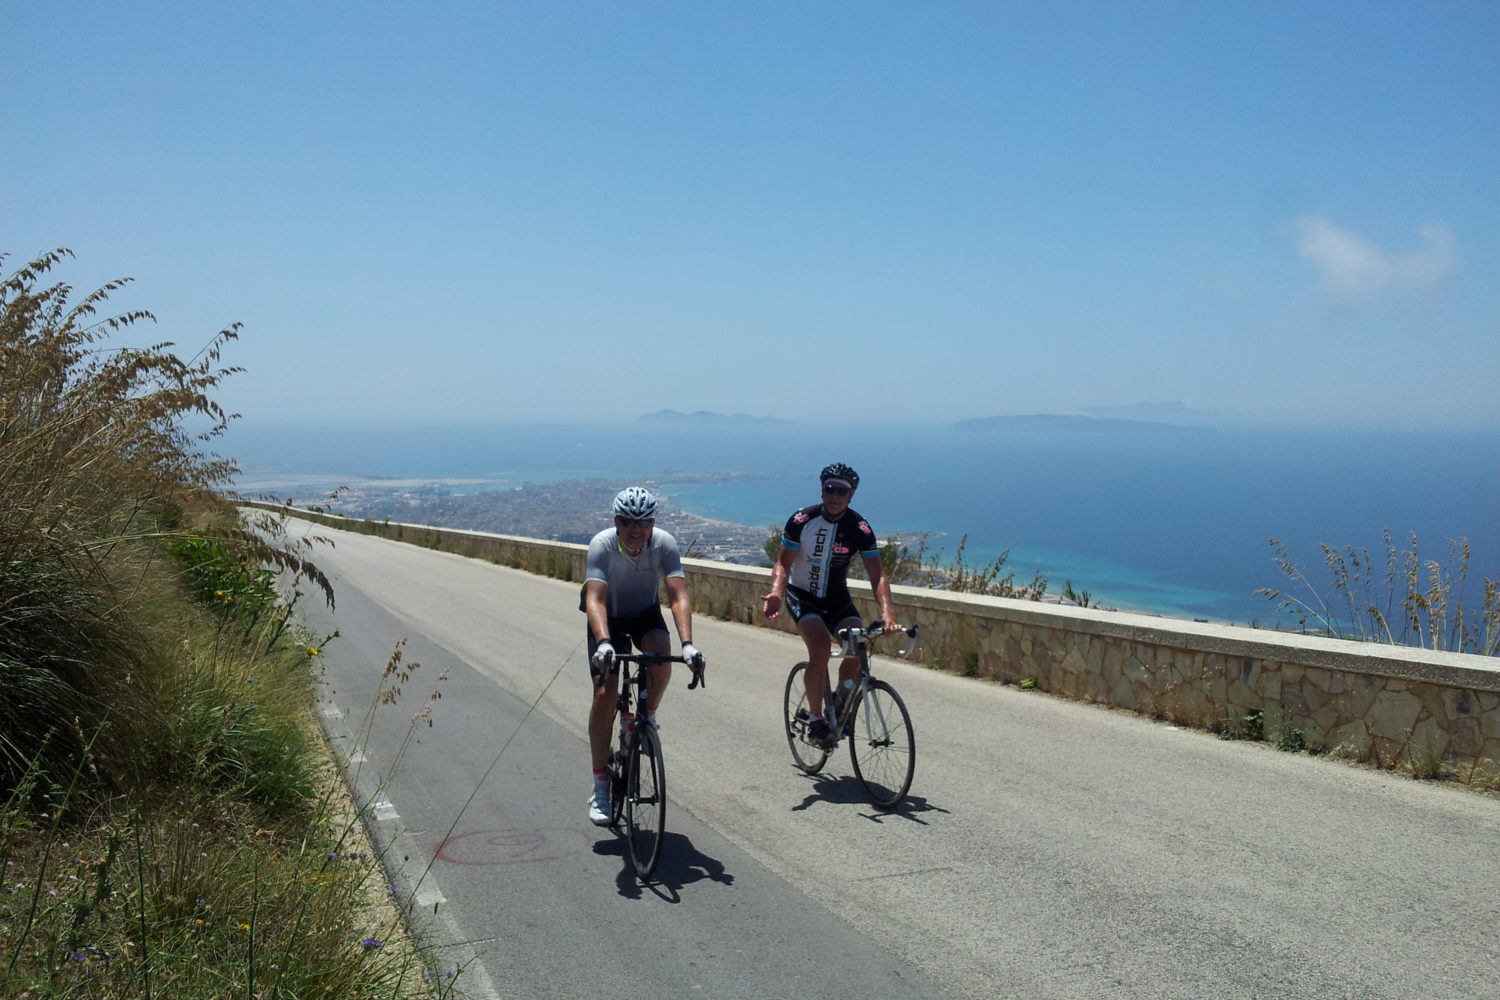 Bring a friend and bike in beautiful Sicily.